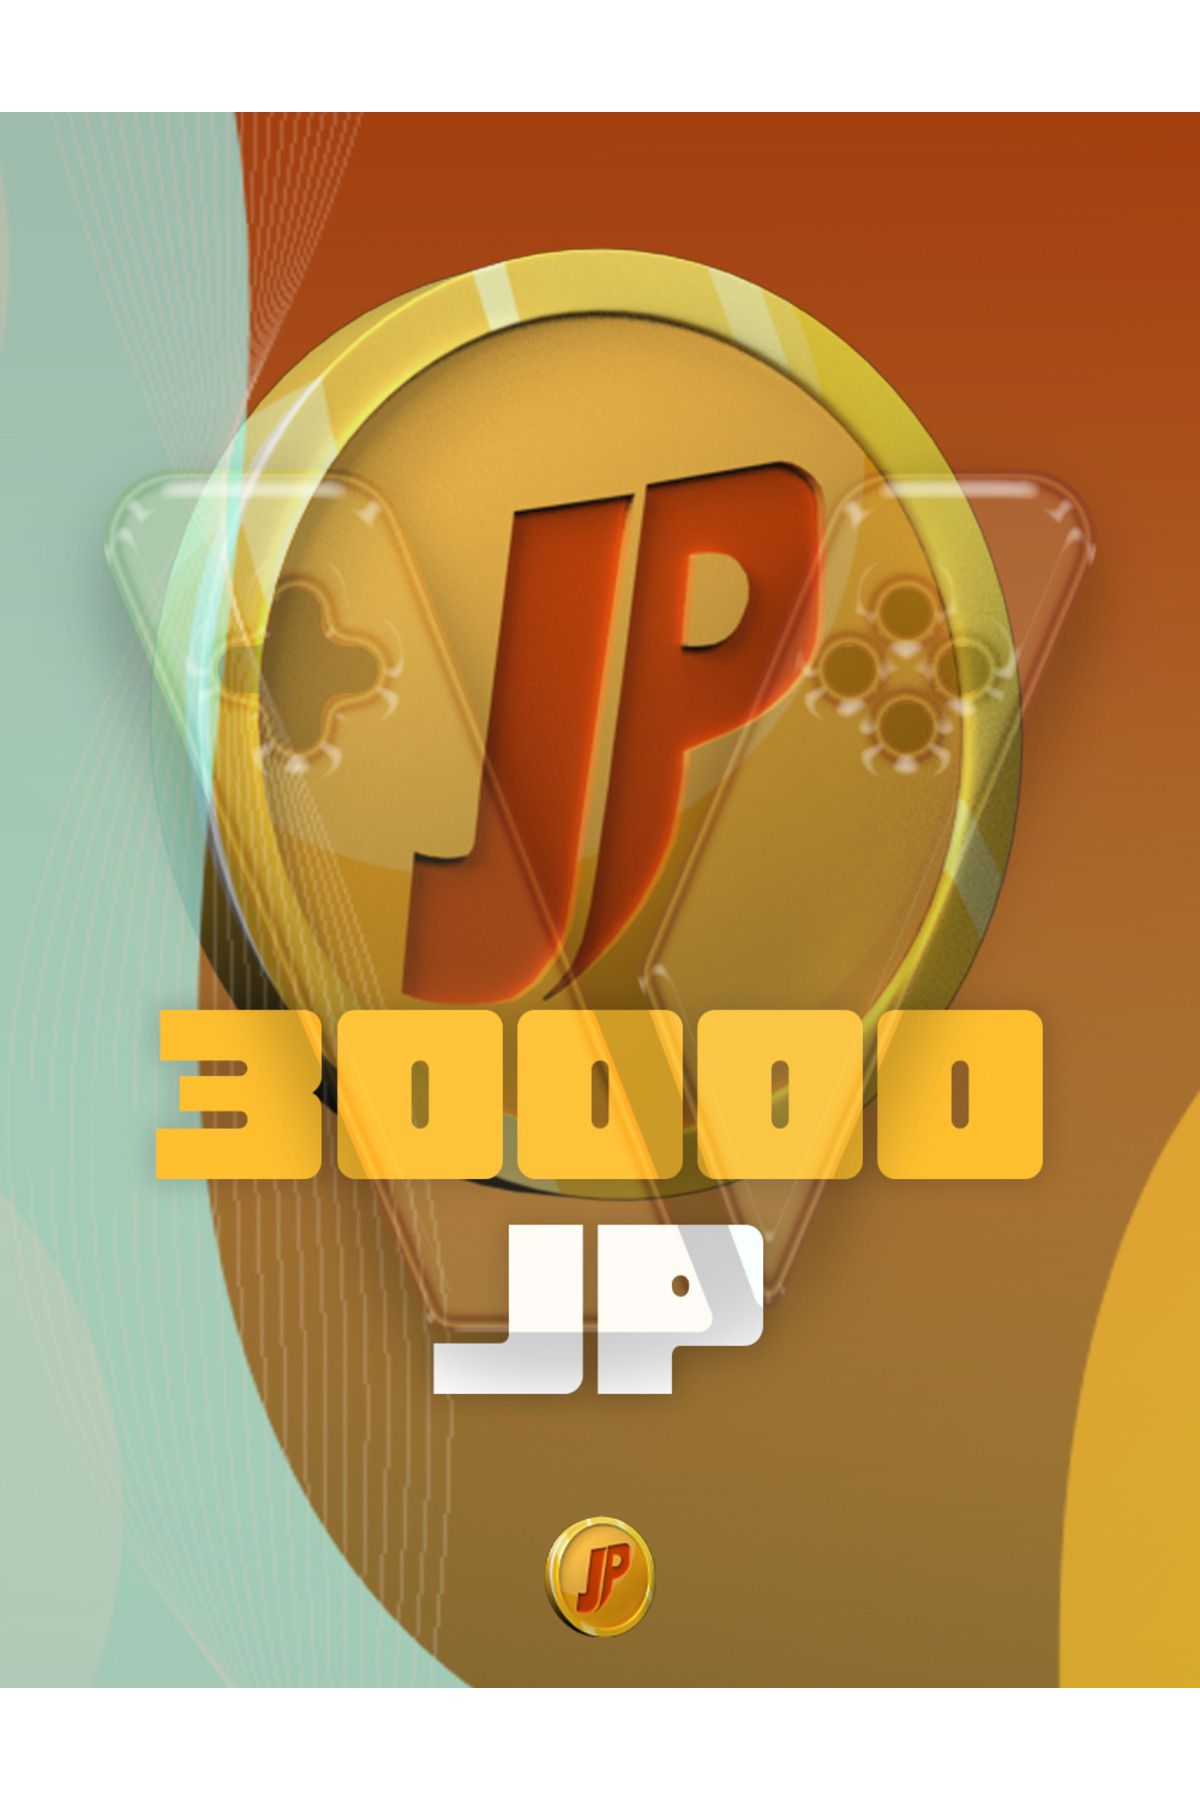 Joygame 30,000 Joypara